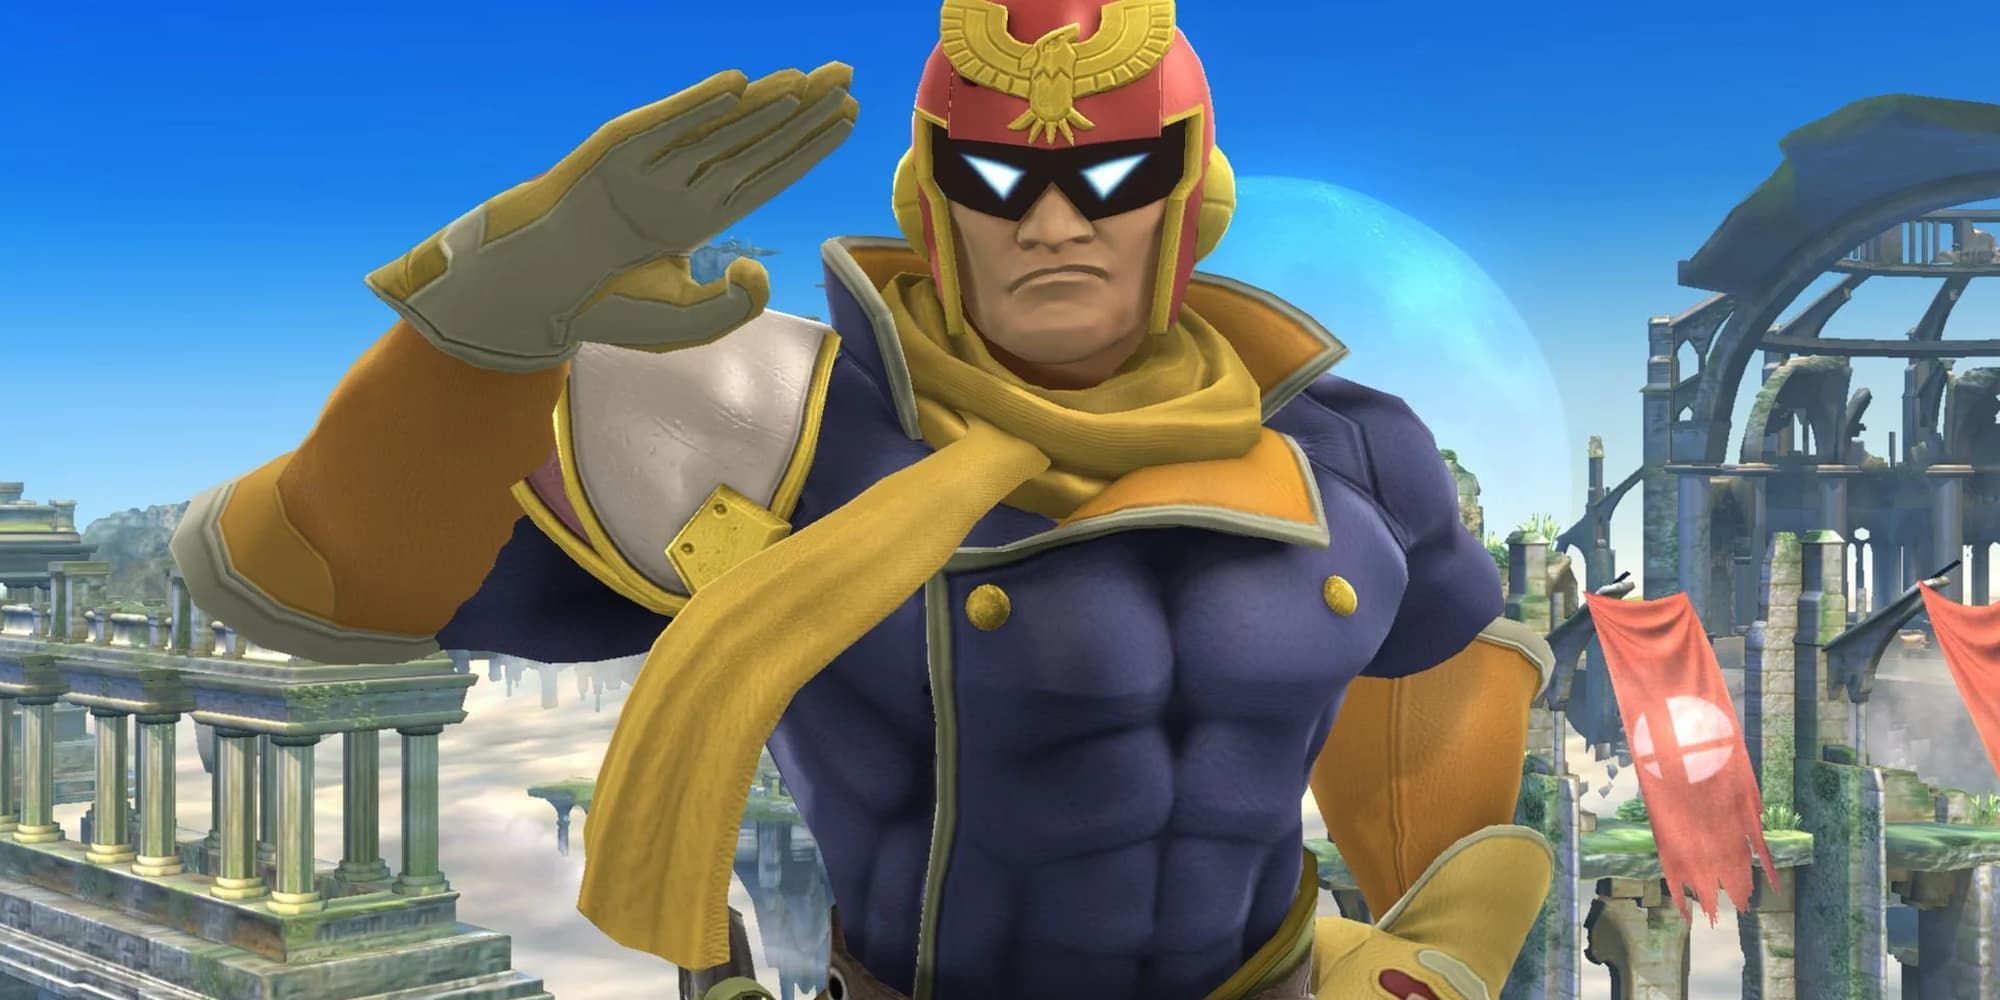 Captain Falcon of F-Zero fame salutes in Super Smash Bros.